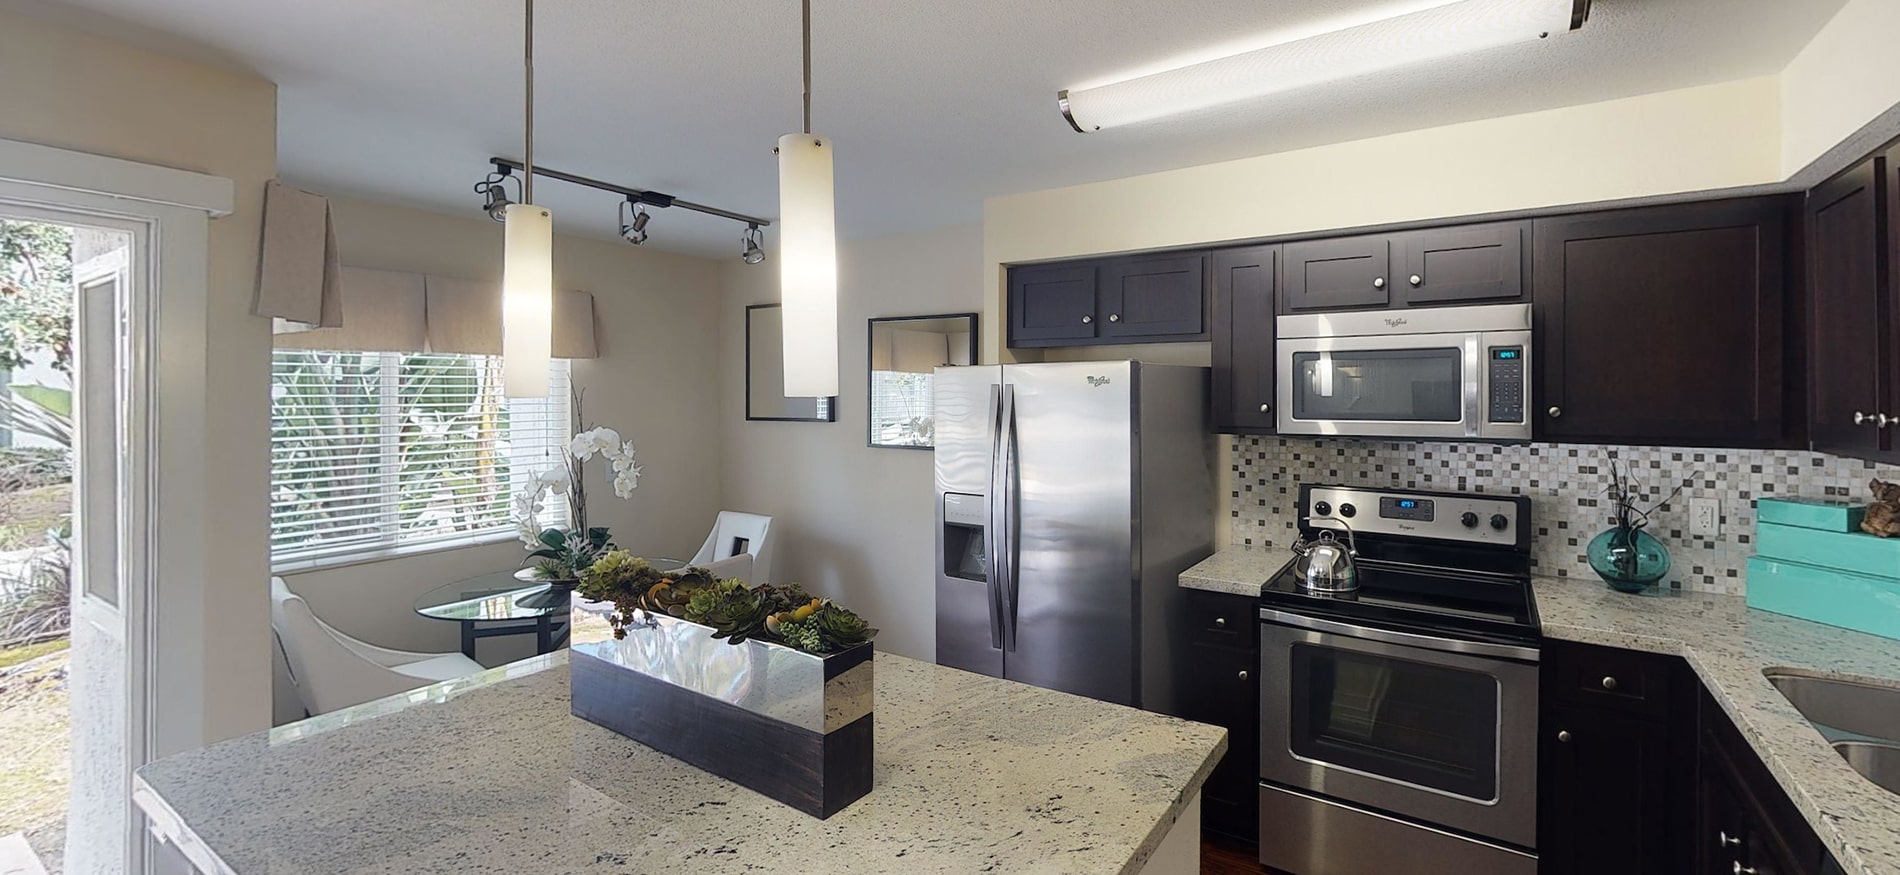 27 Seventy Five Mesa Verde apartment kitchen